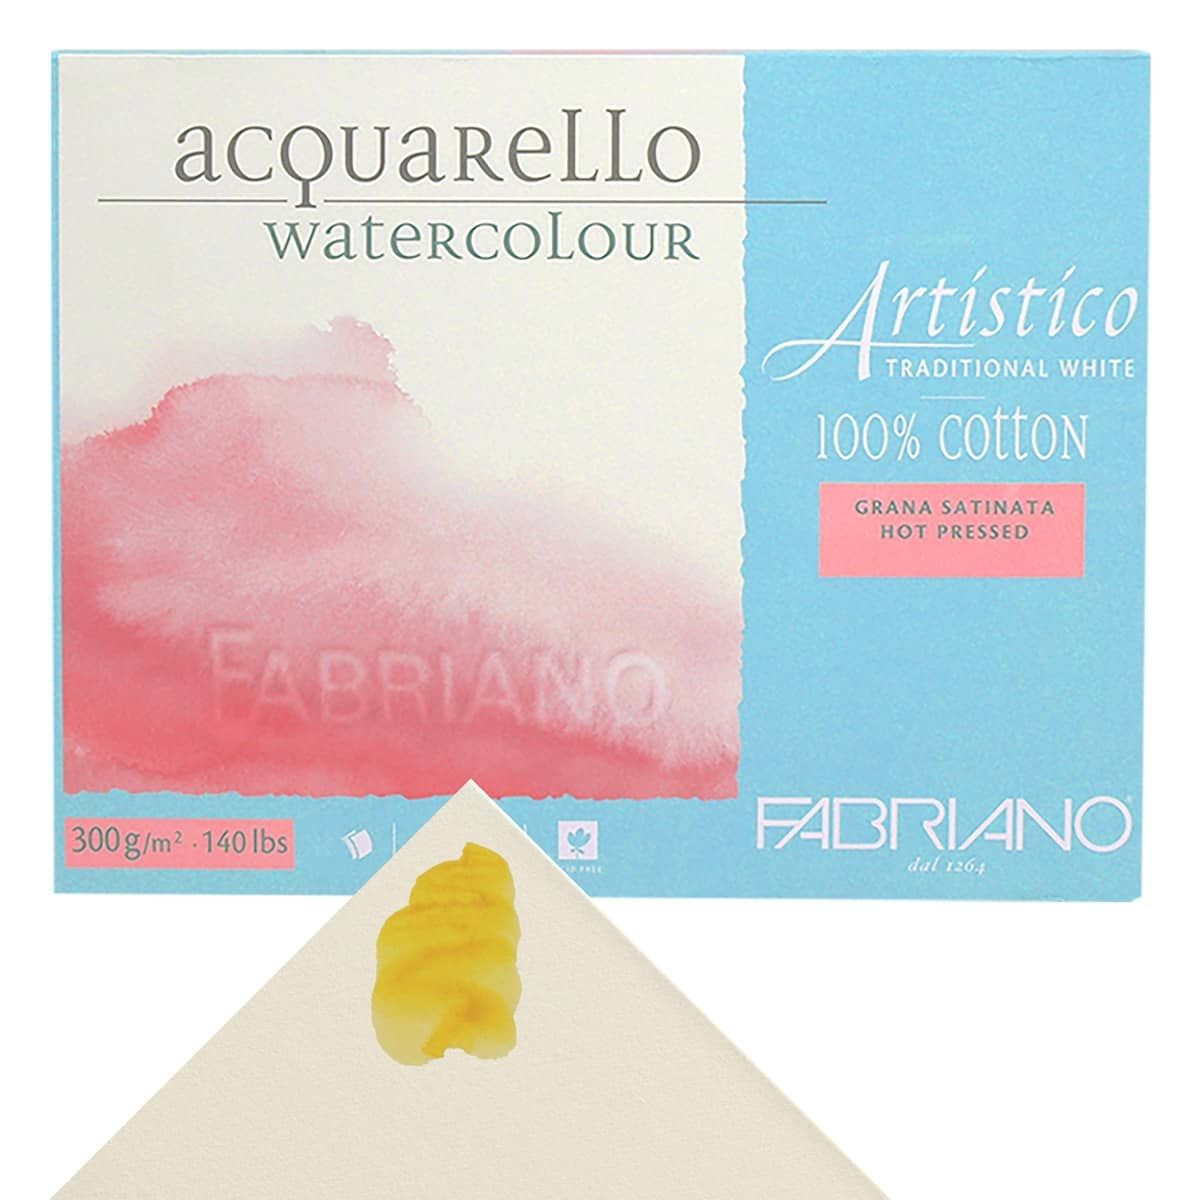 Fabriano® Artistico Extra White Rough Watercolor Block